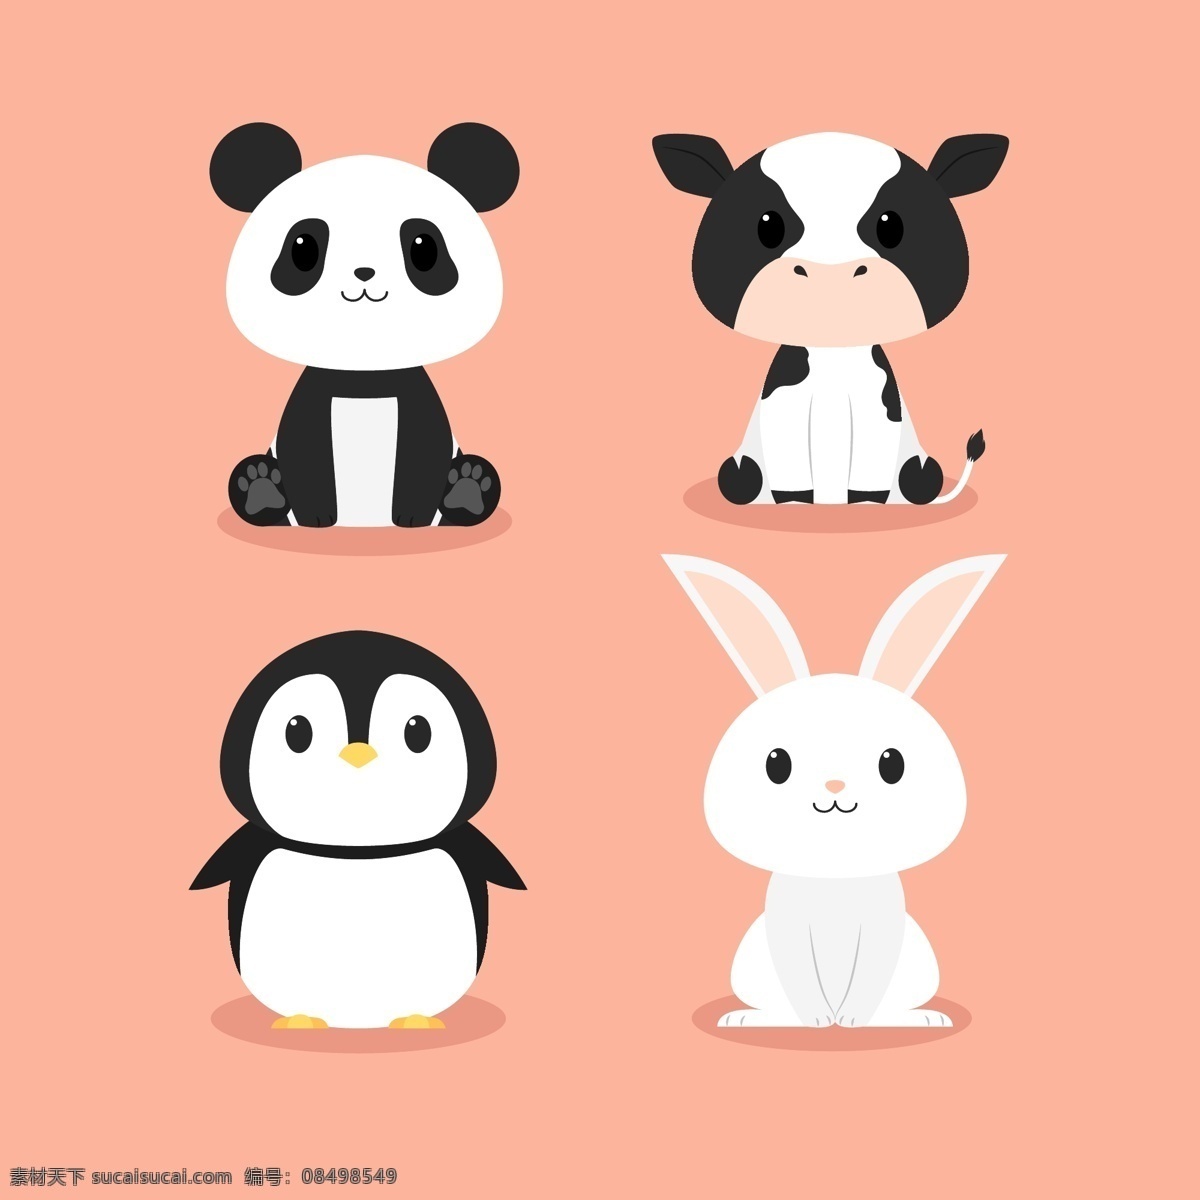 大熊猫 企鹅 熊猫 牛 兔子动物 卡通 可爱 童装 动漫动画 动漫人物